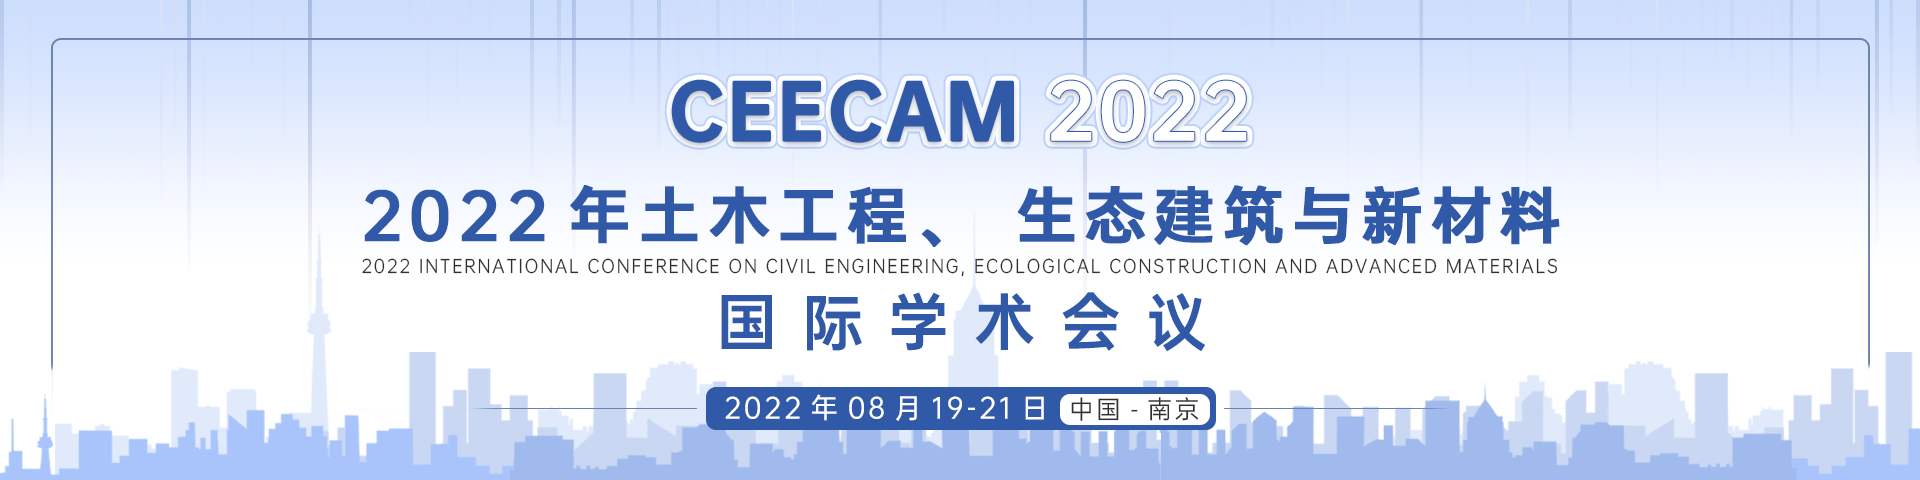 8月南京站-CEECAM 2022-会议艾思banner-20220505.png